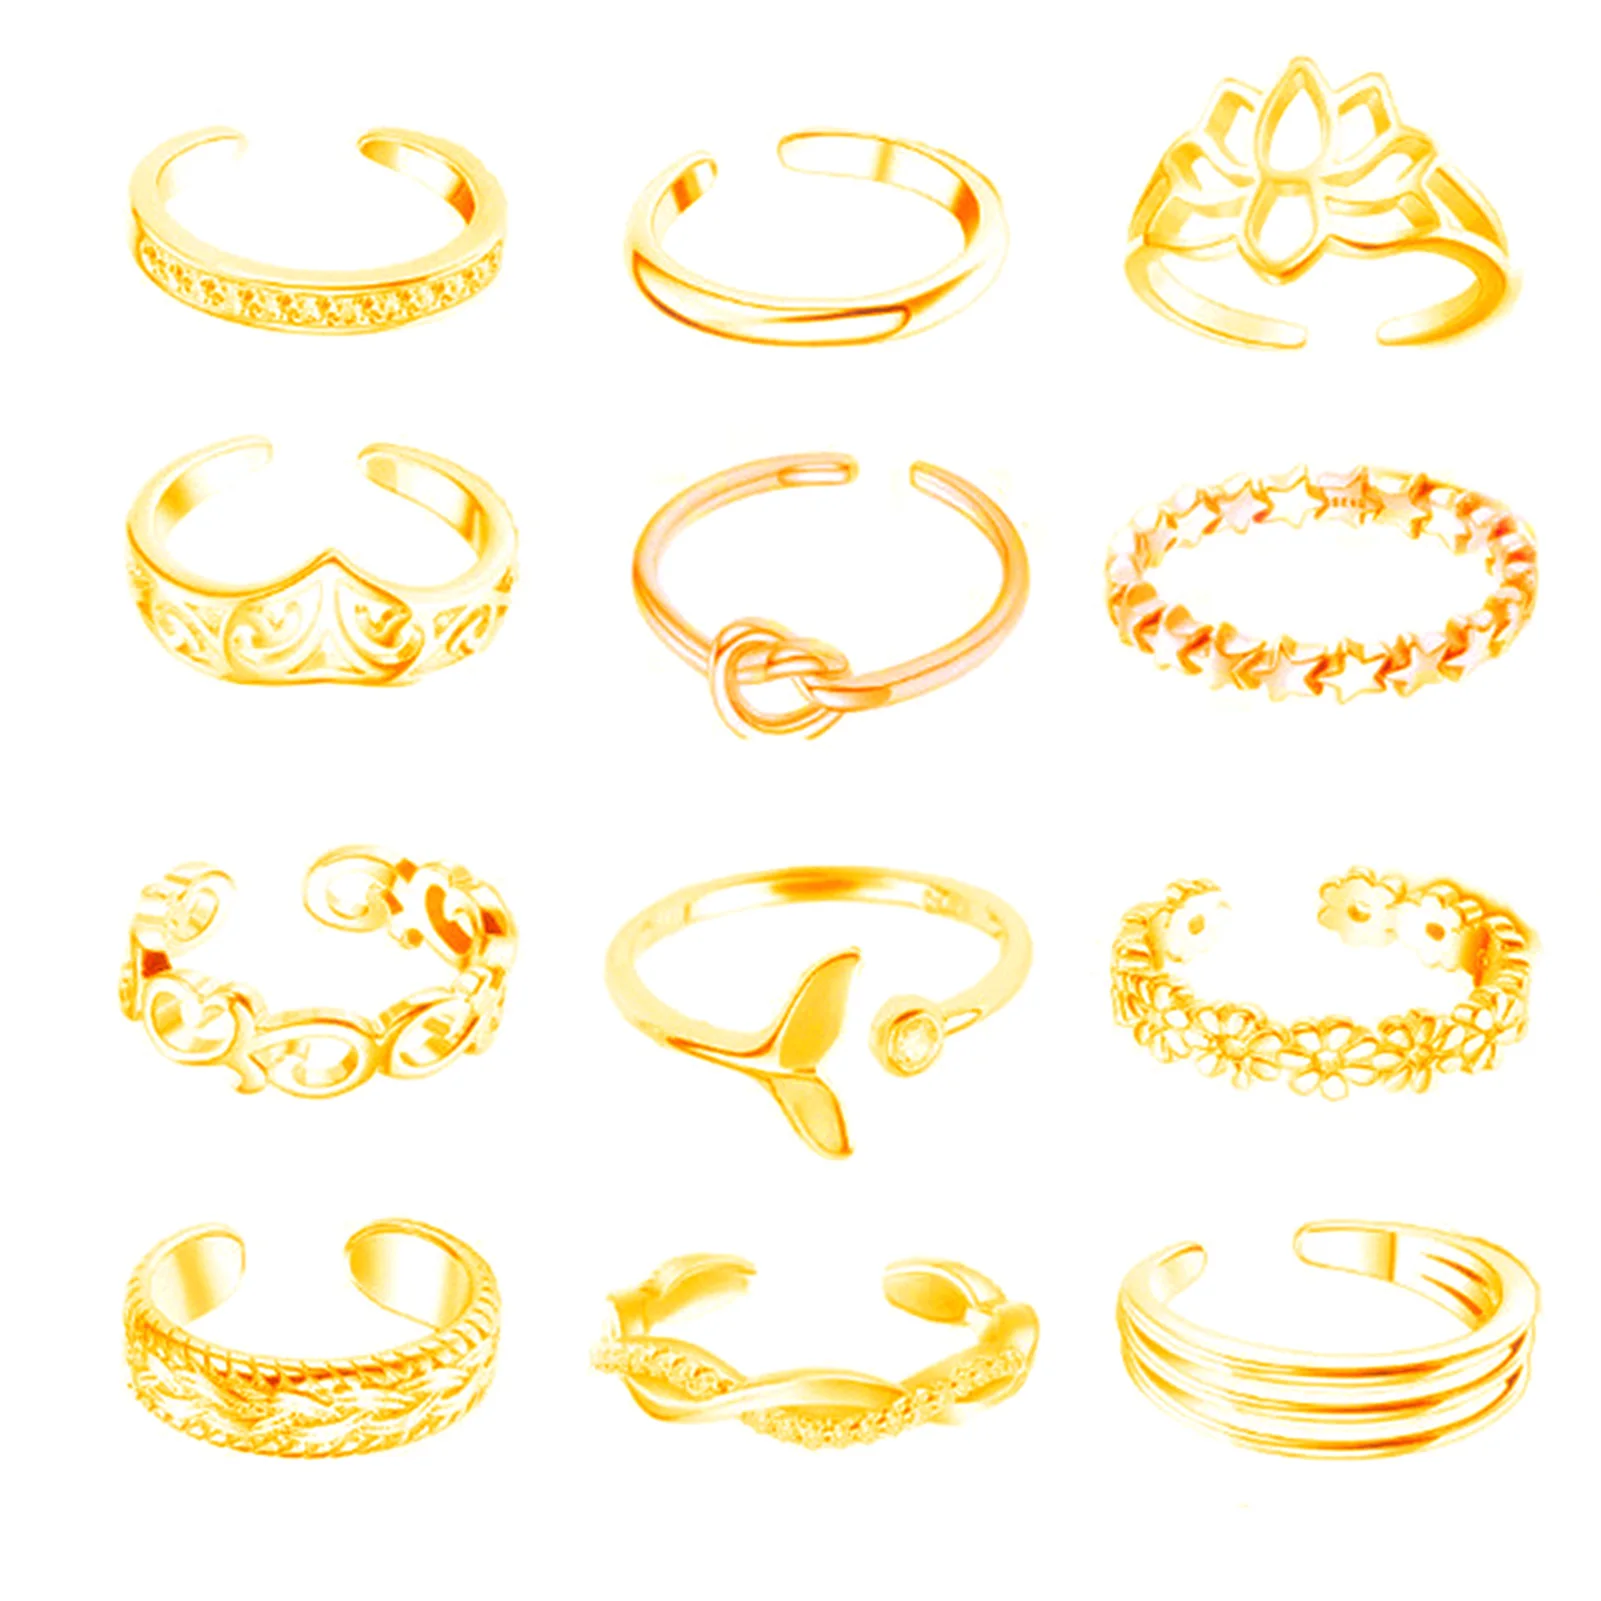 12 Stück Fußring offene Zehen ringe Roségold/Silber/Gold Farbe Legierung verstellbare Ringe Set für Frauen Sommer Strand Fuß schmuck